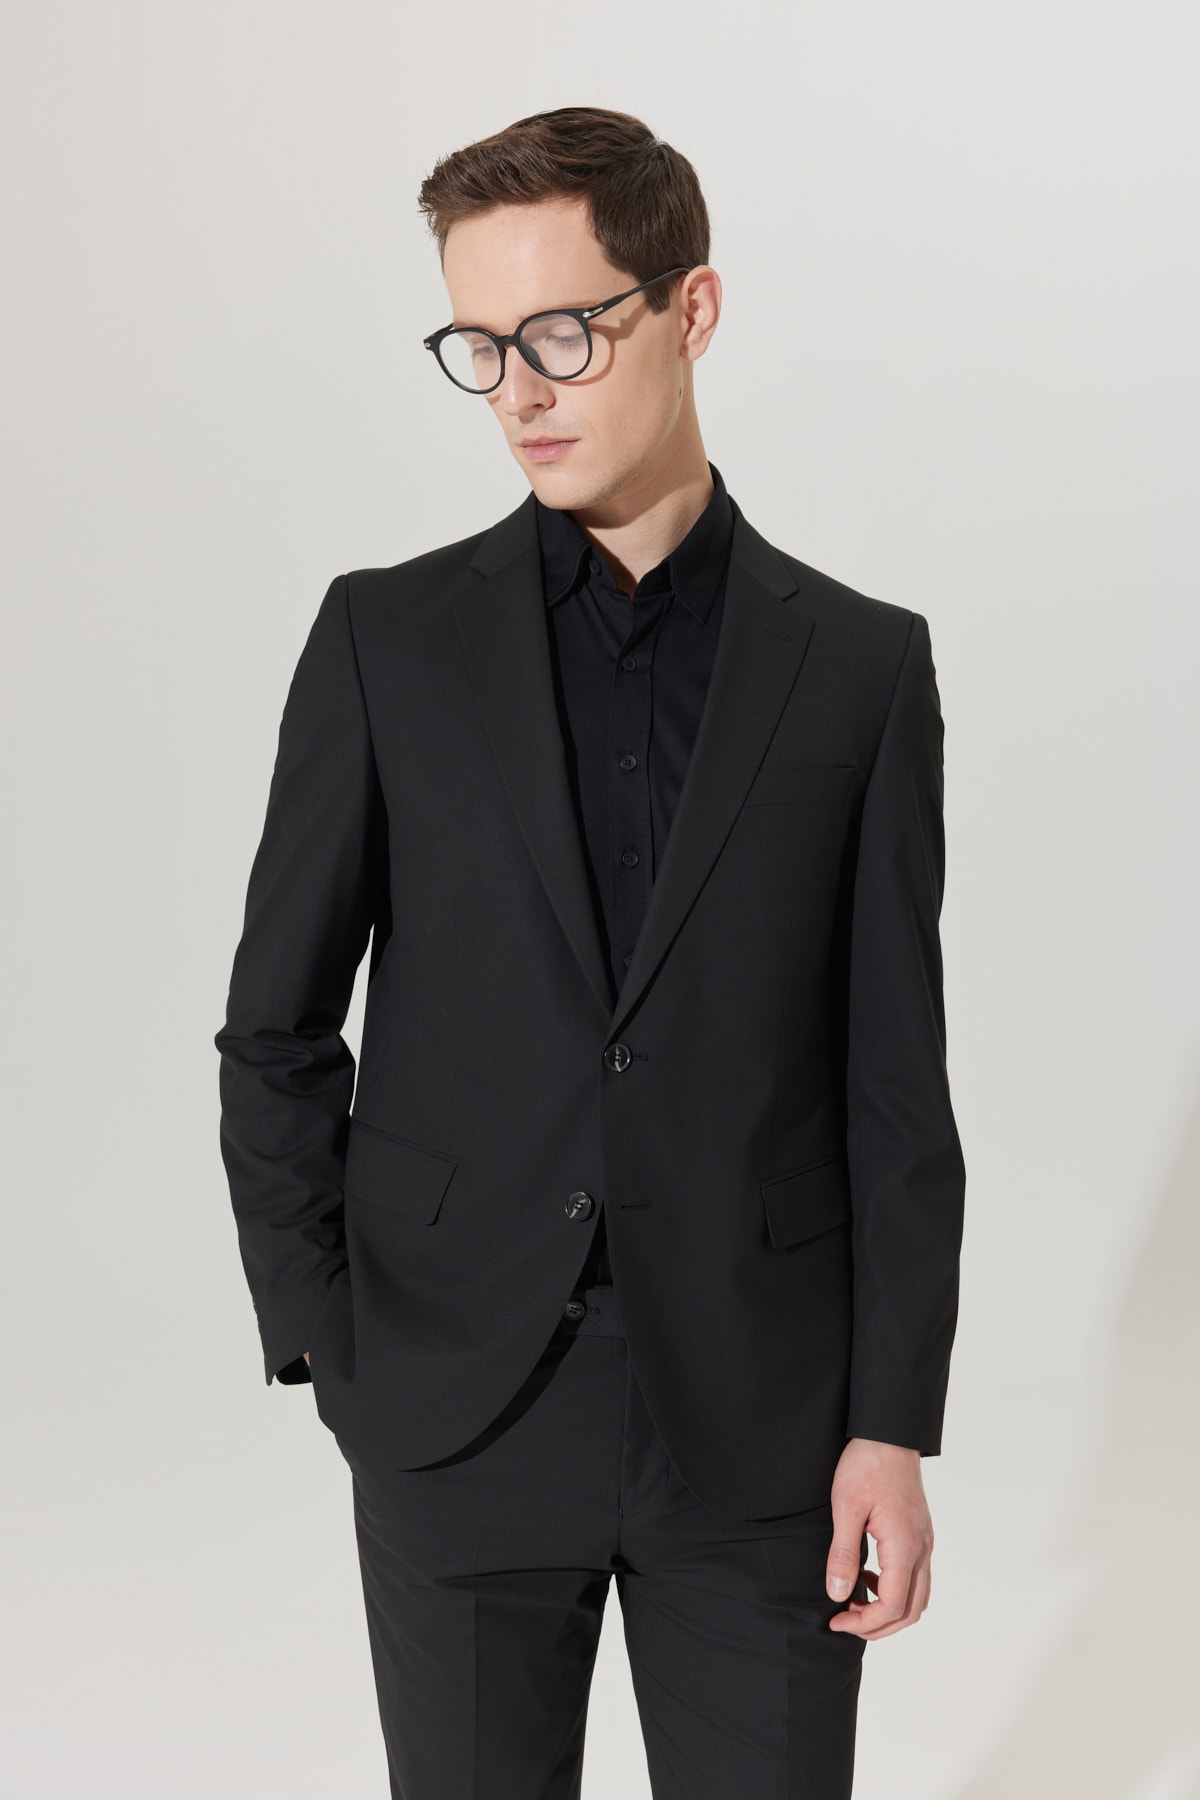 ALTINYILDIZ CLASSICS Men's Black Regular Fit Relaxed Cut Black Suit